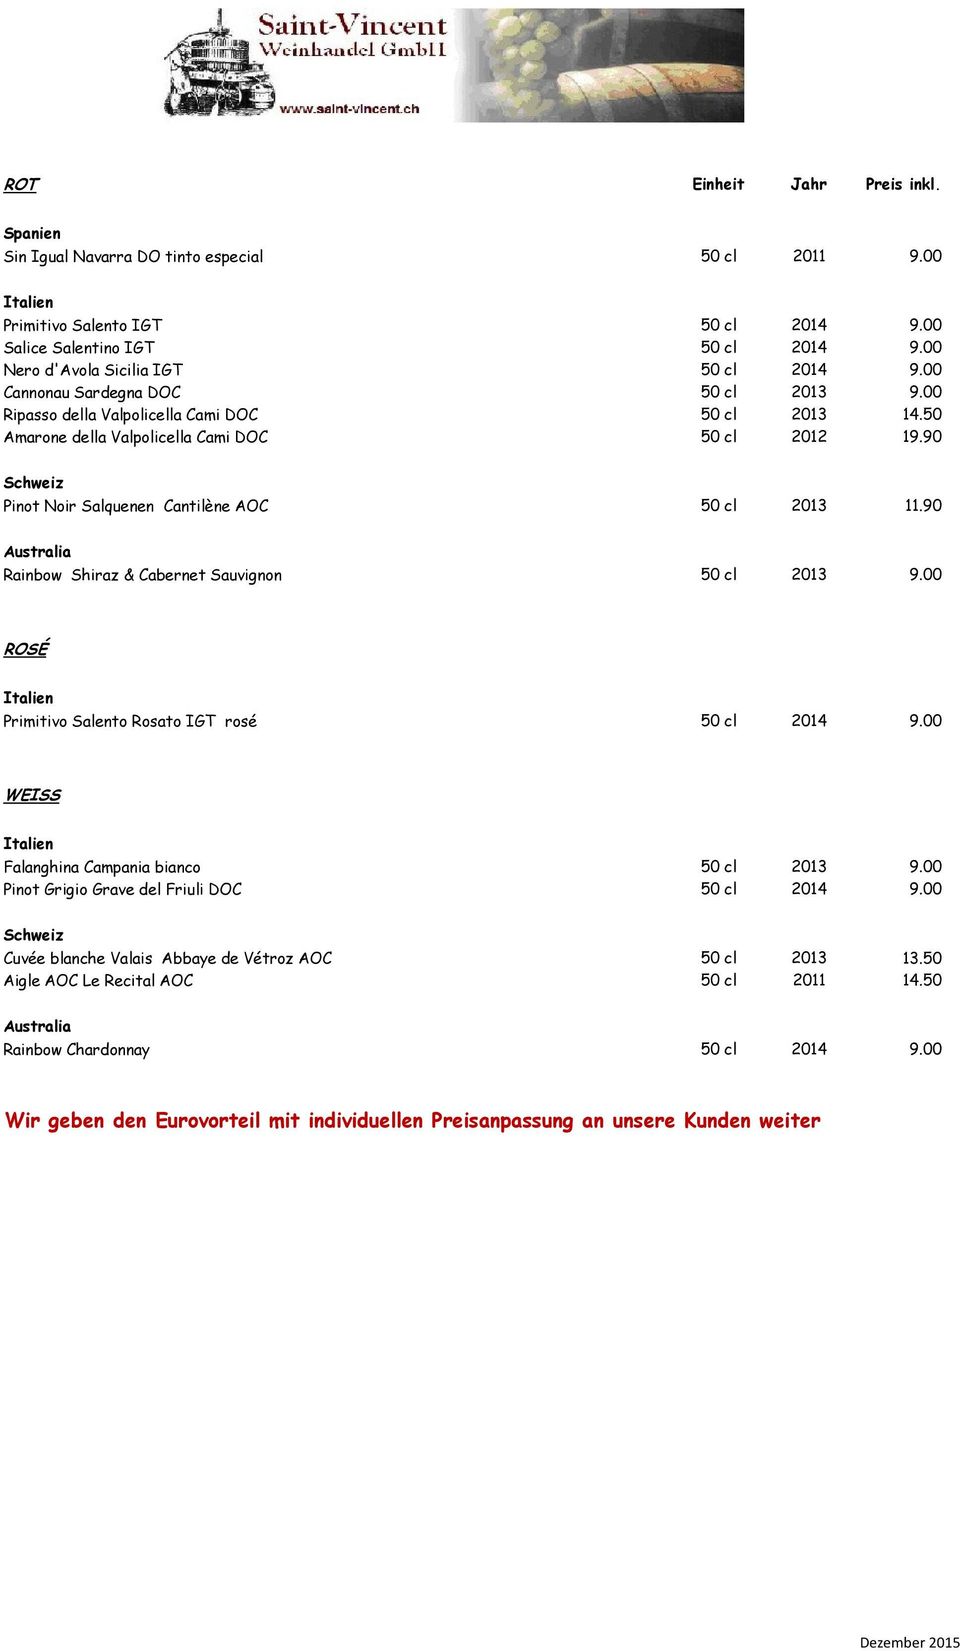 90 Schweiz Pinot Noir Salquenen Cantilène AOC 50 cl 2013 11.90 Australia Rainbow Shiraz & Cabernet Sauvignon 50 cl 2013 9.00 ROSÉ Primitivo Salento Rosato IGT rosé 50 cl 2014 9.